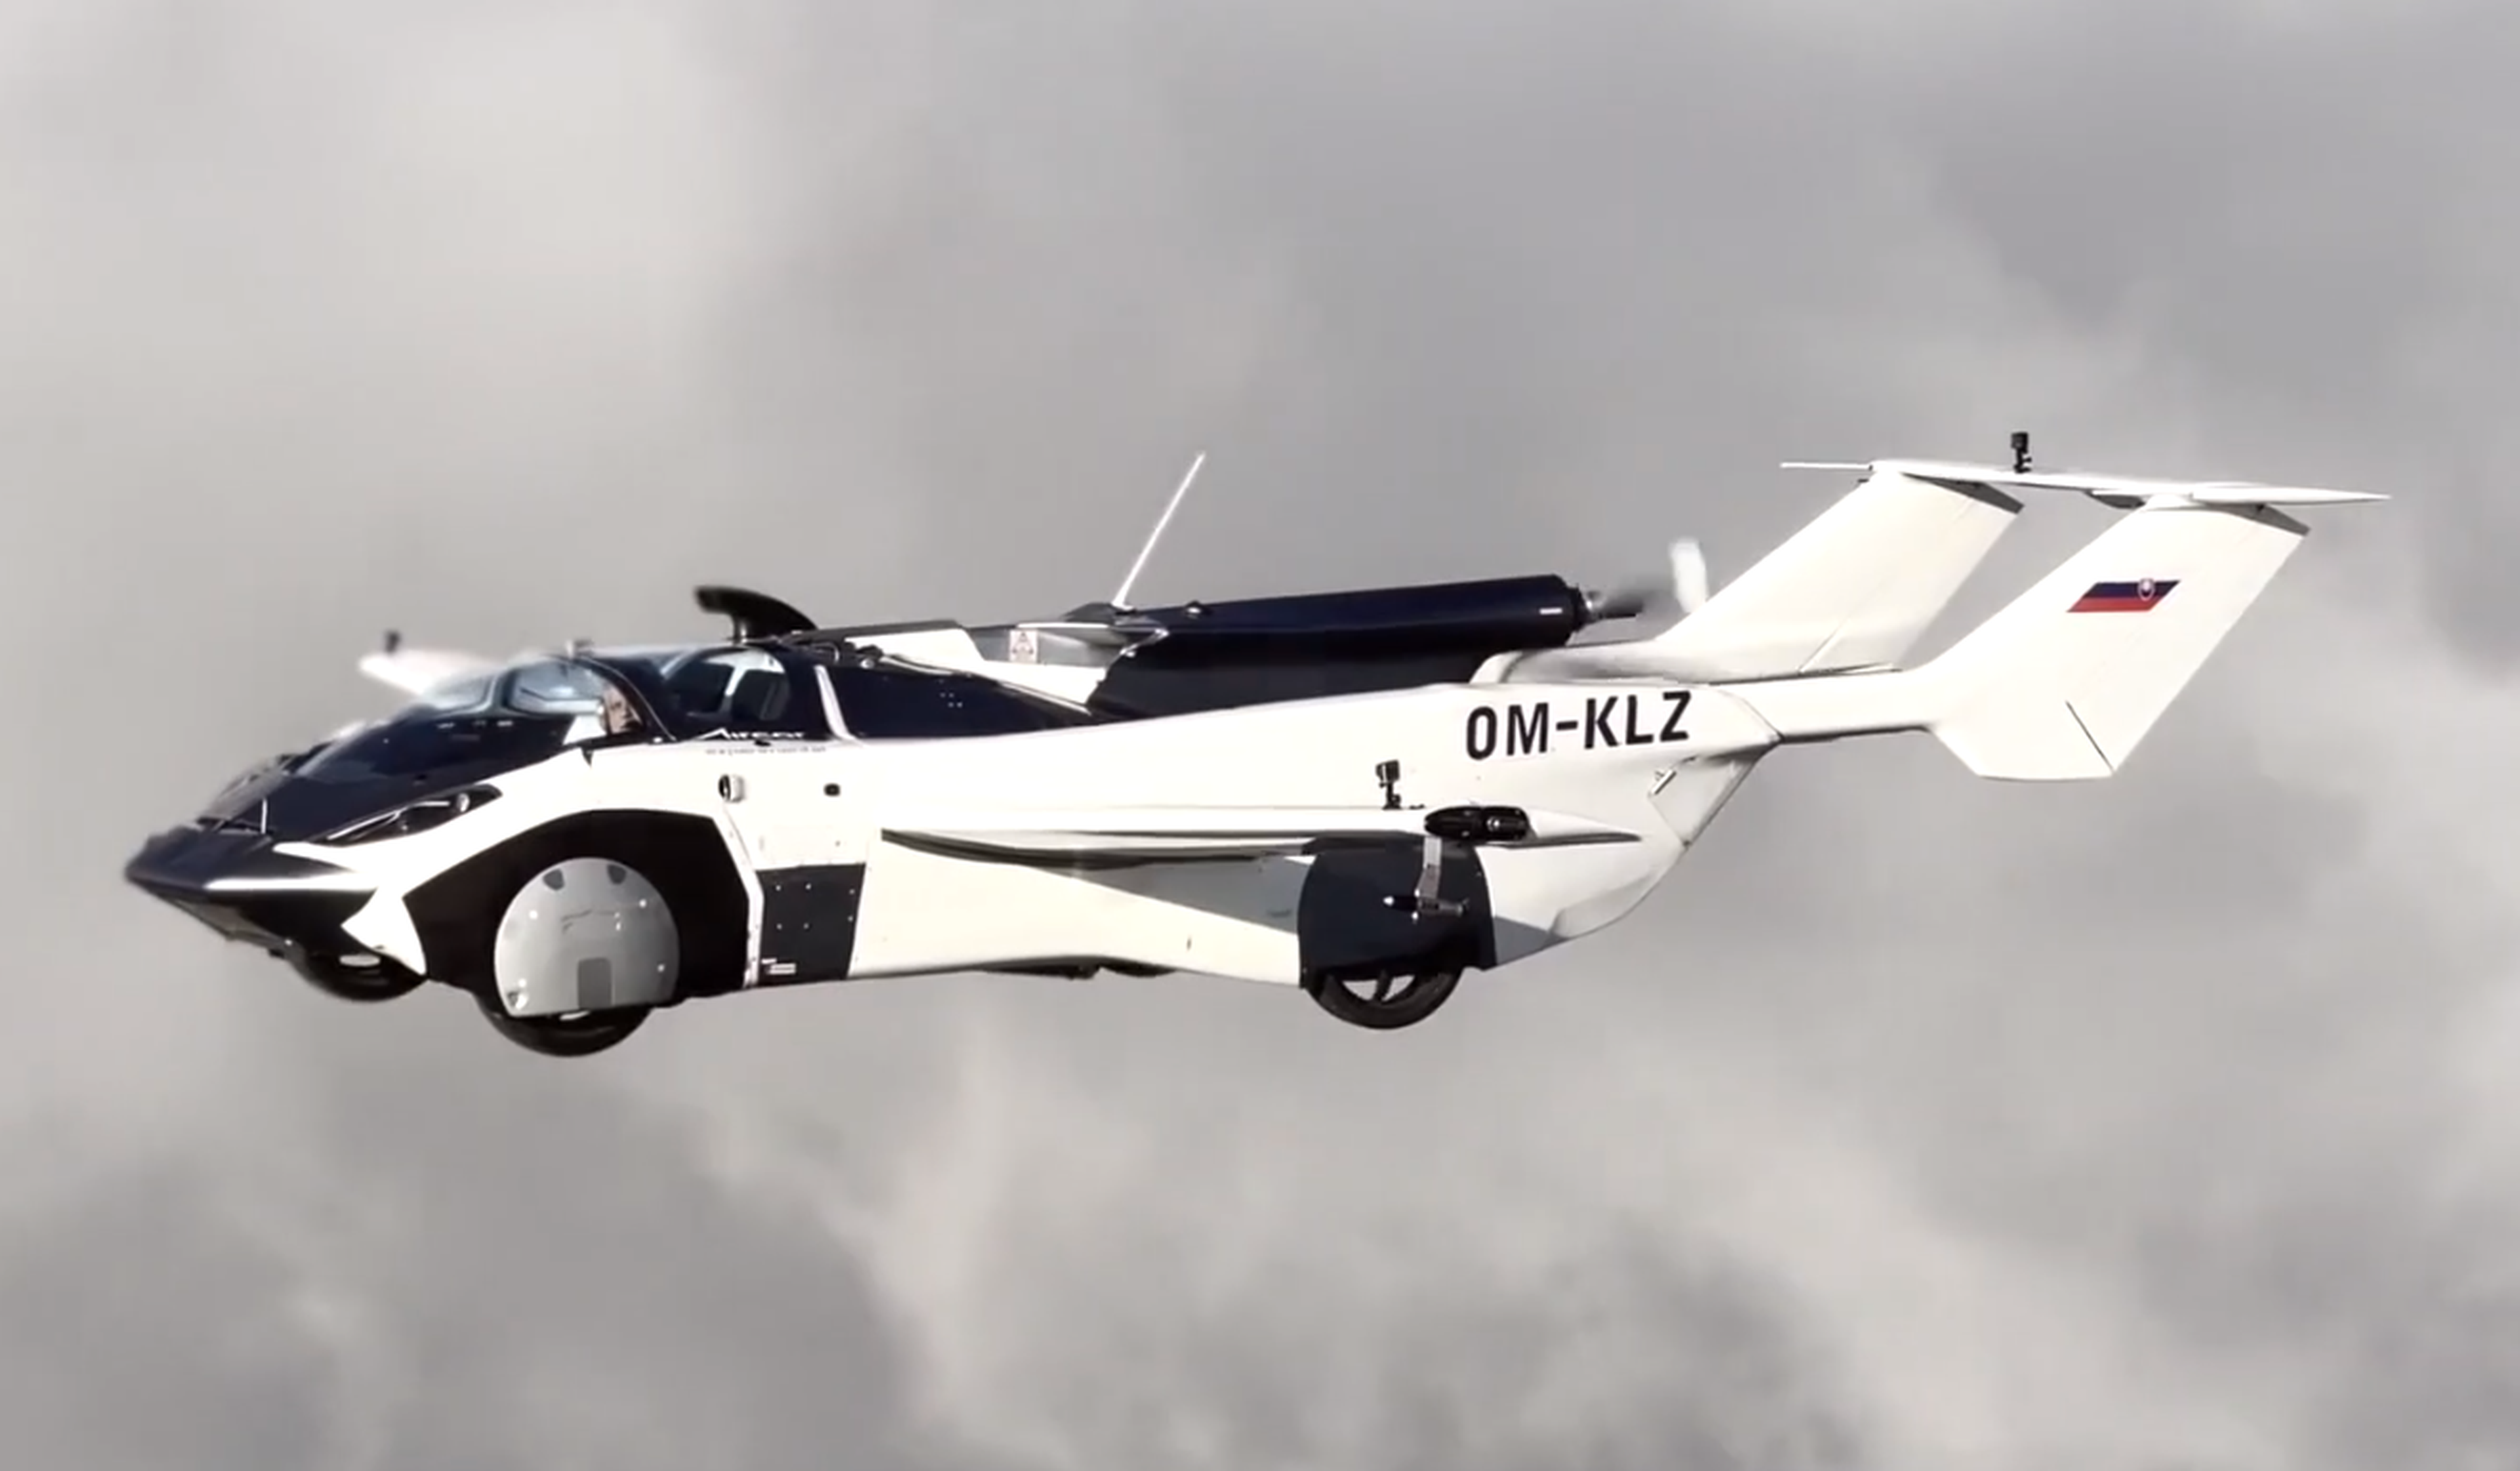 VÍDEO: el Aircar, este coche volador, ya tiene la licencia y todo en regla para poder volar